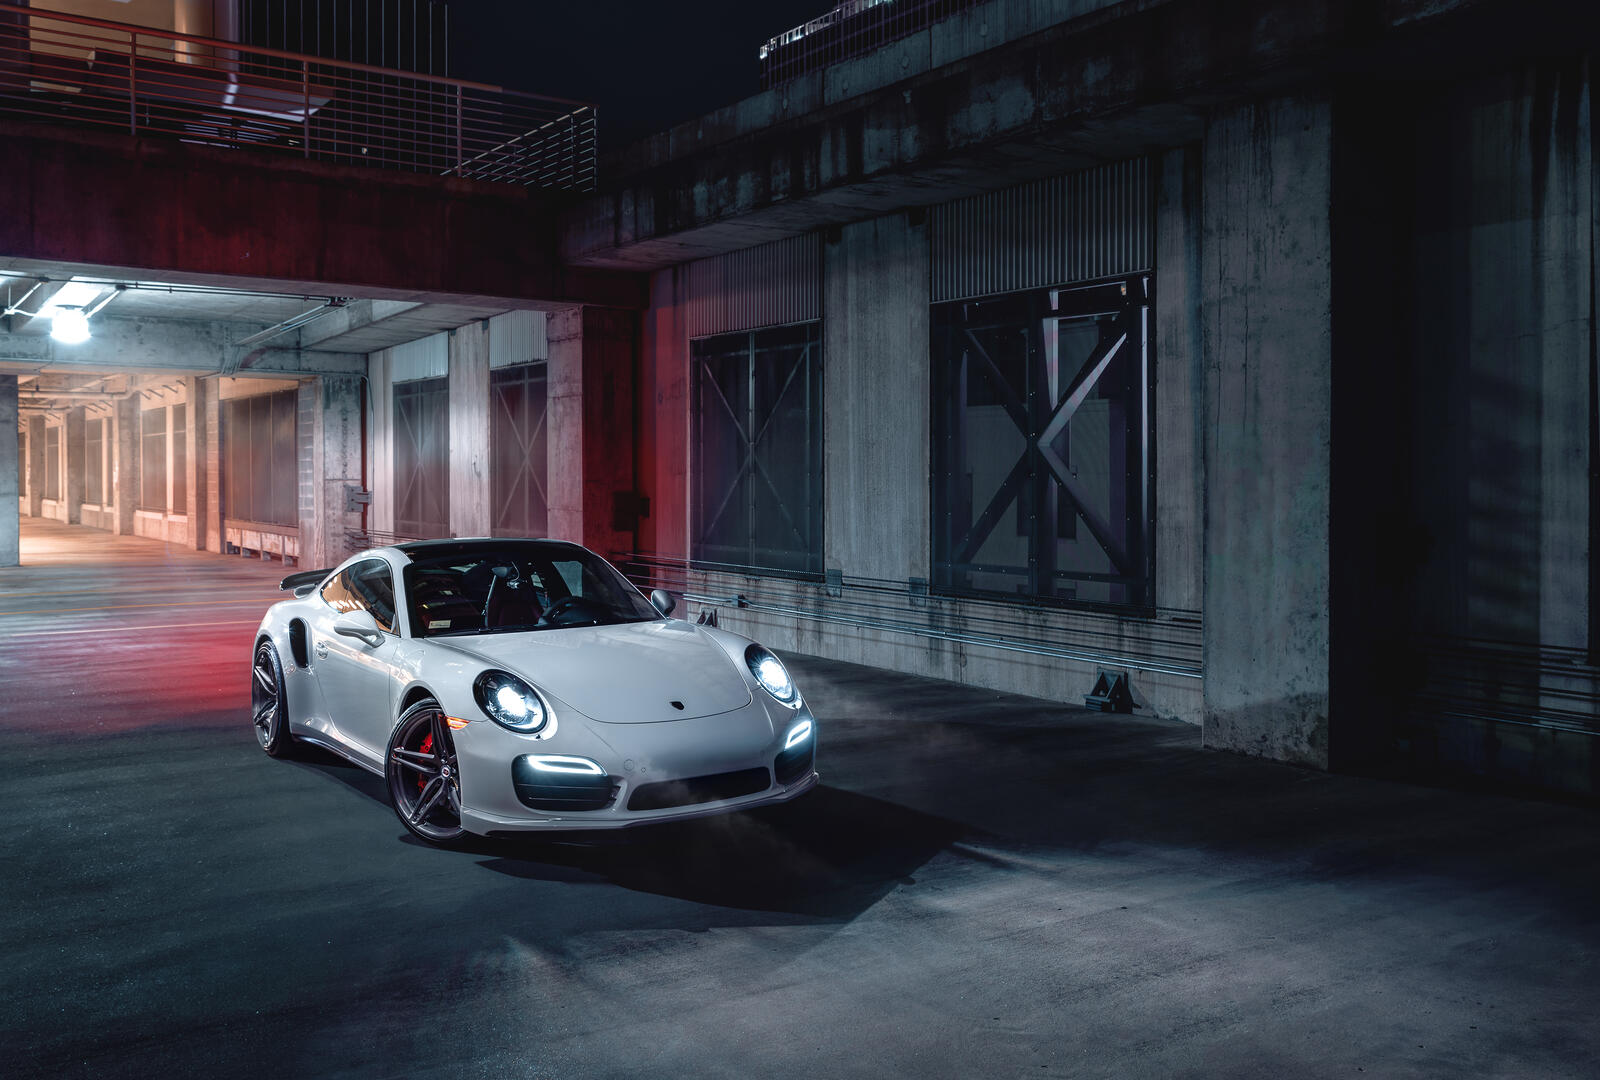 Wallpapers Porsche 911 automobiles white car on the desktop